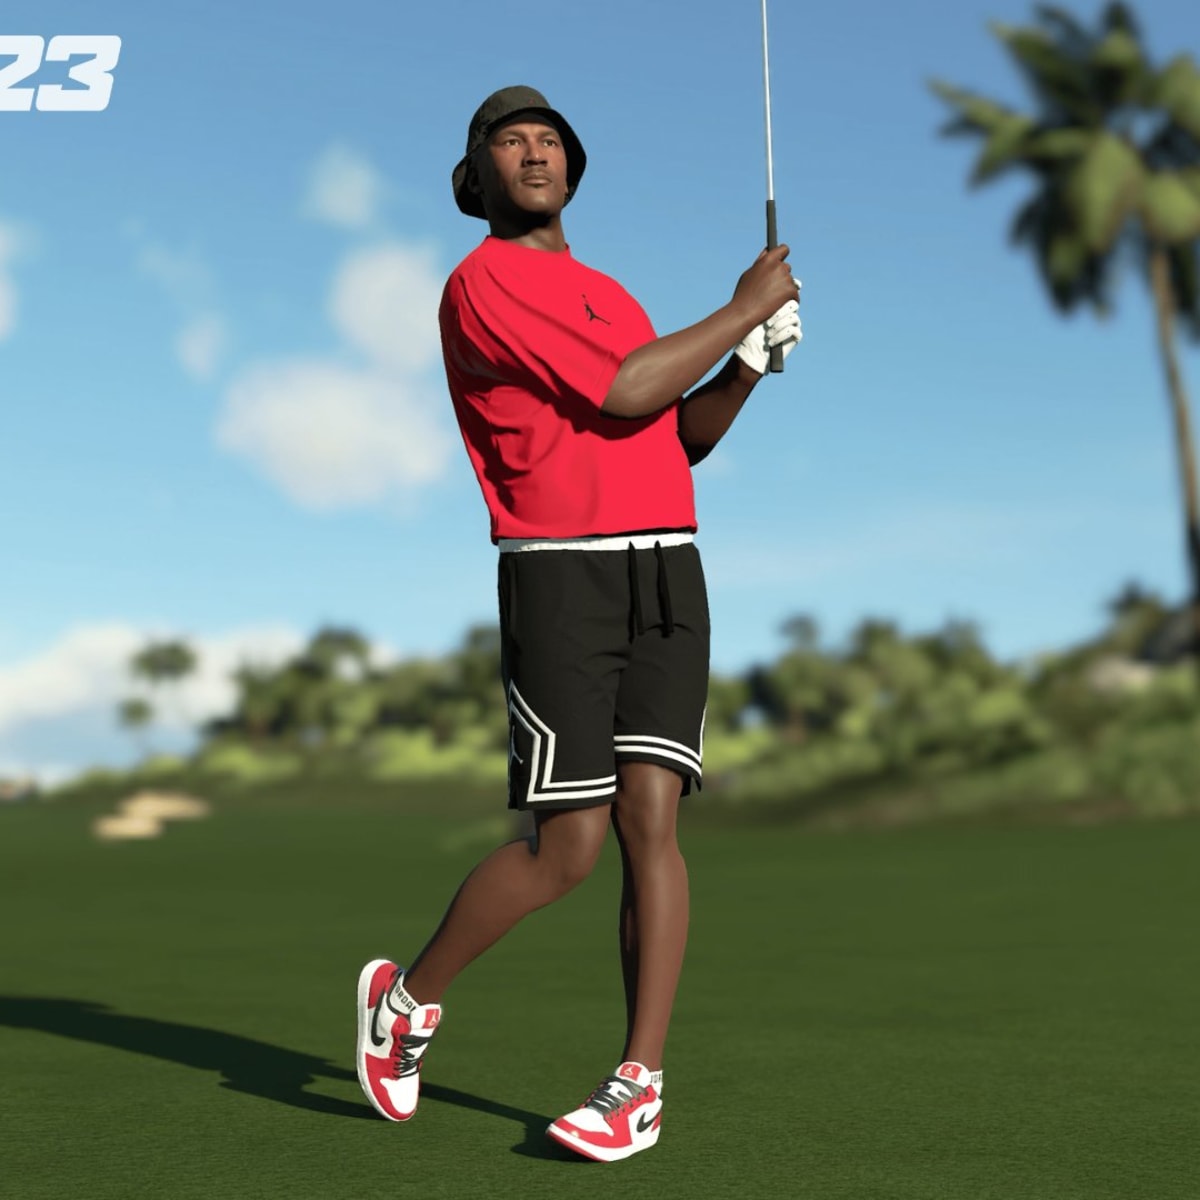 Michael Jordan's Best Golf Outfits